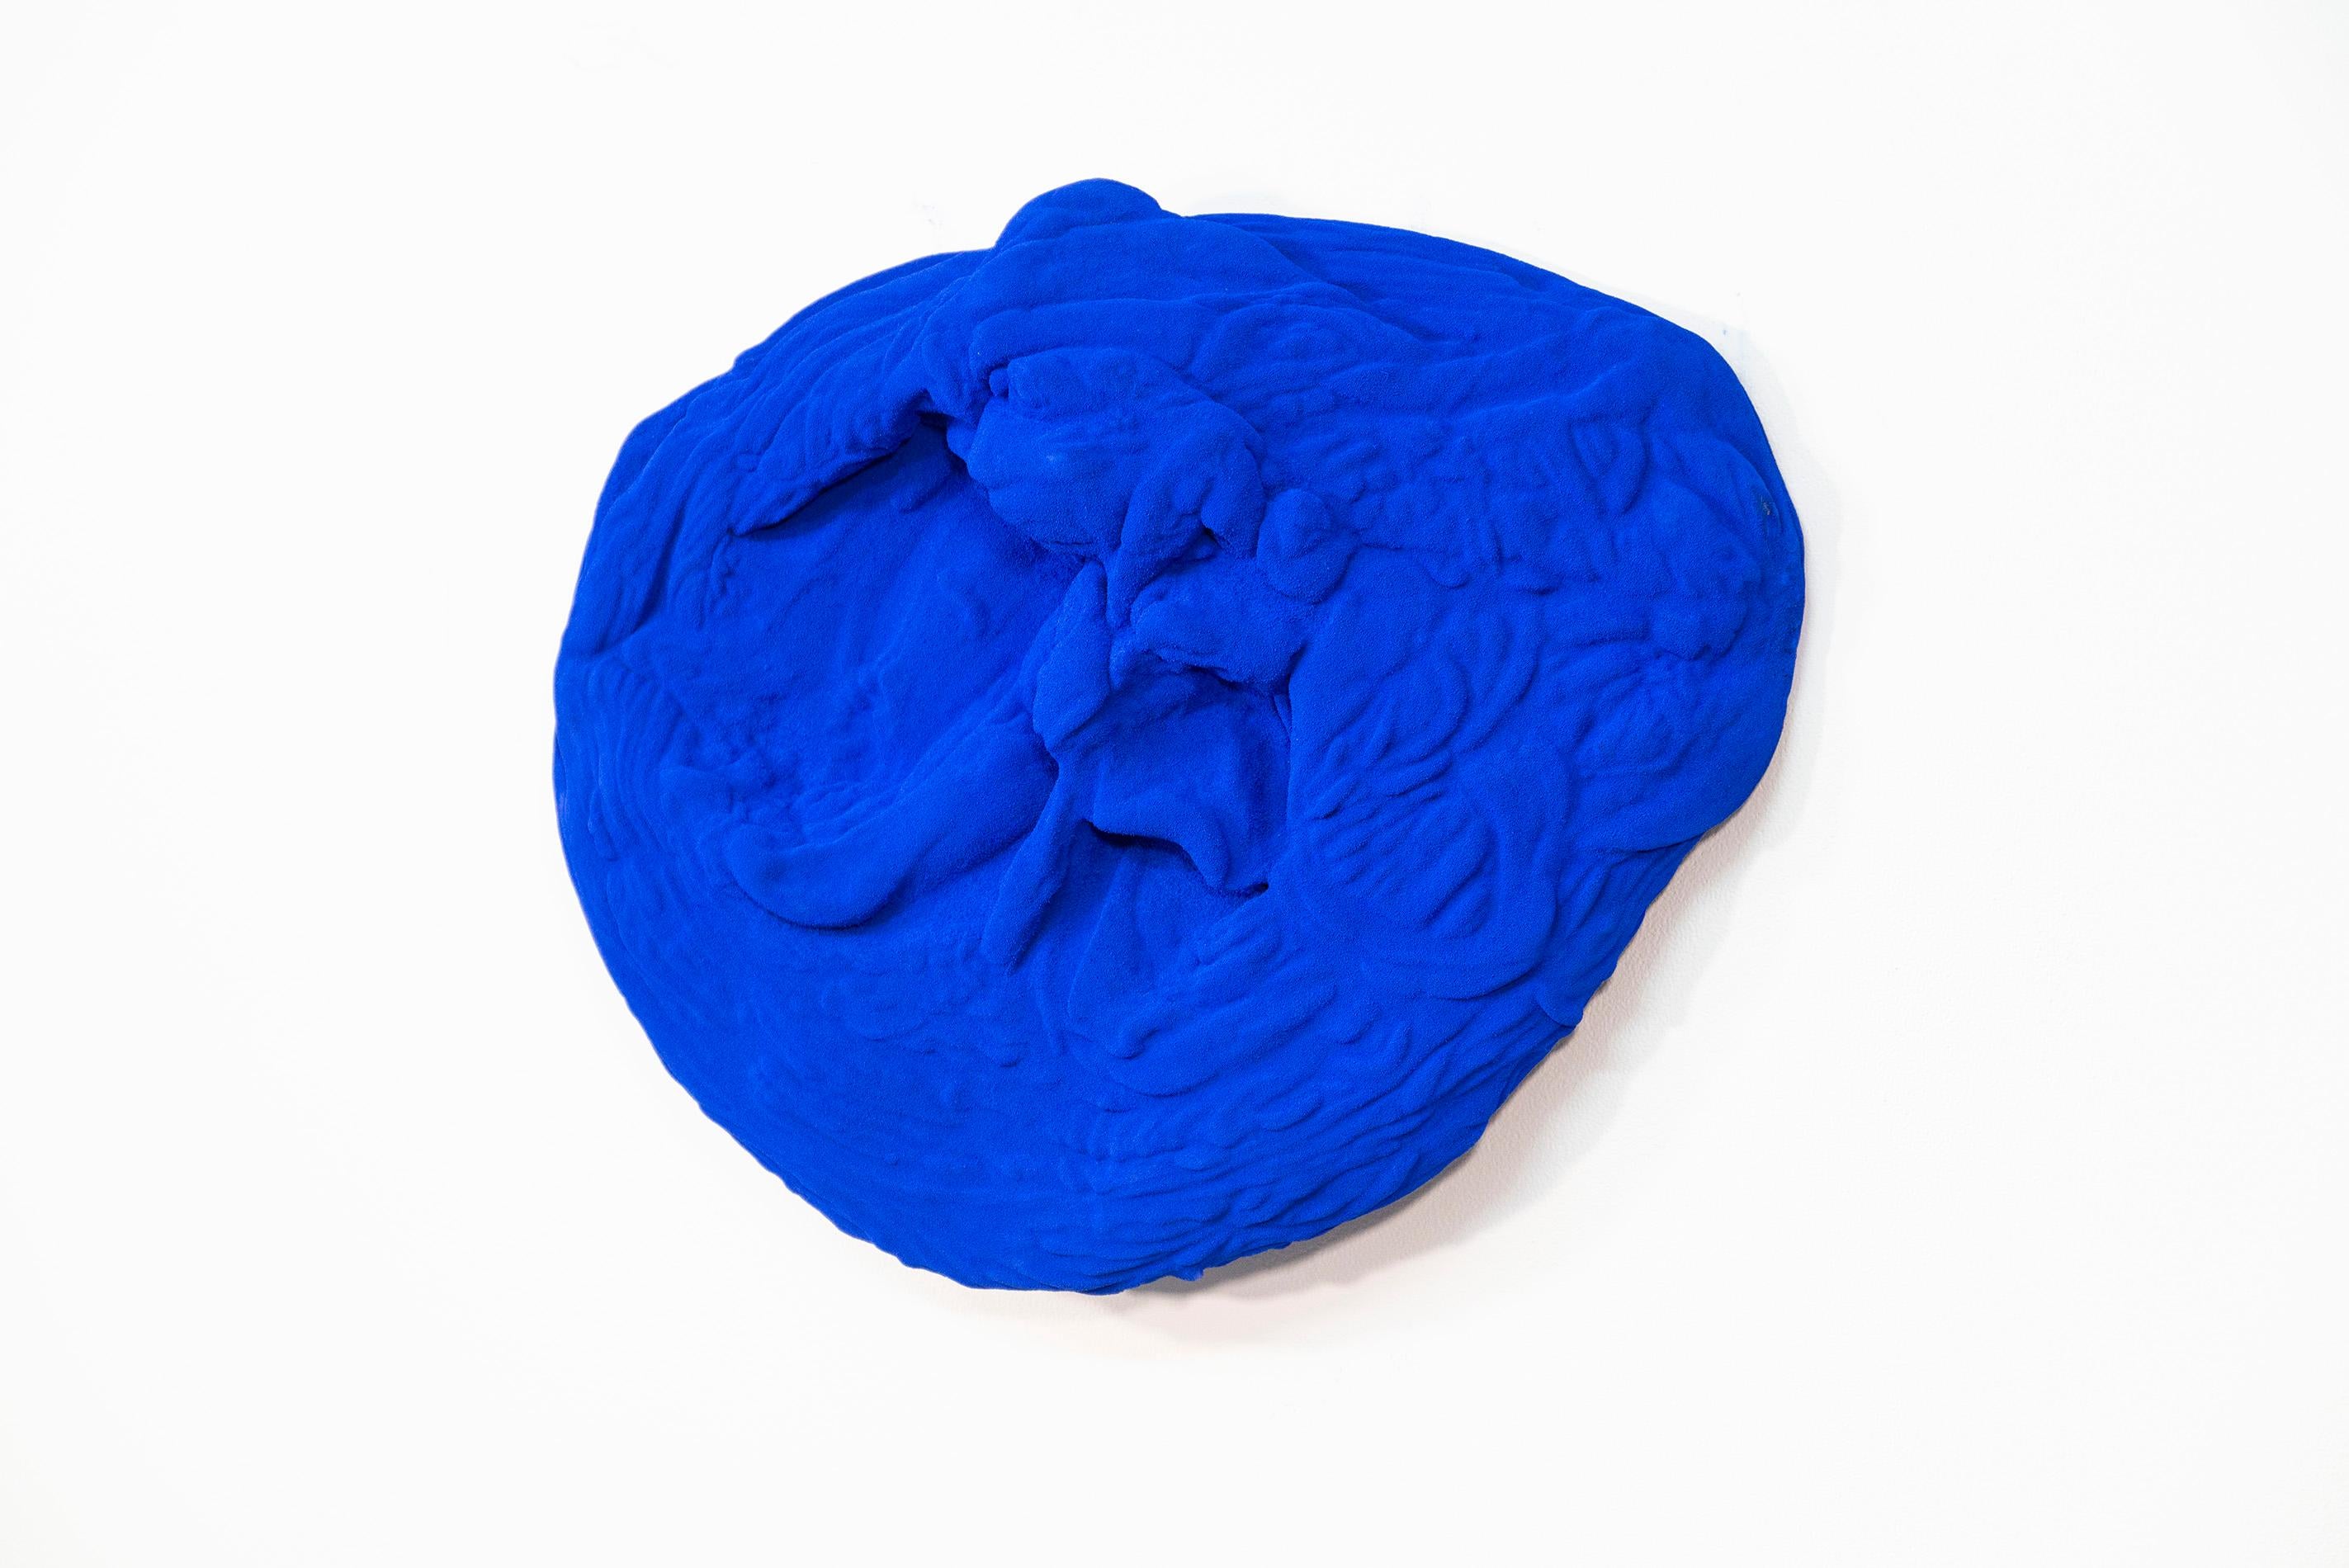 Blau Matter 1 - matt, blau, strukturiert, abstrakt, Mischtechnik-Wandskulptur (Zeitgenössisch), Mixed Media Art, von Shayne Dark